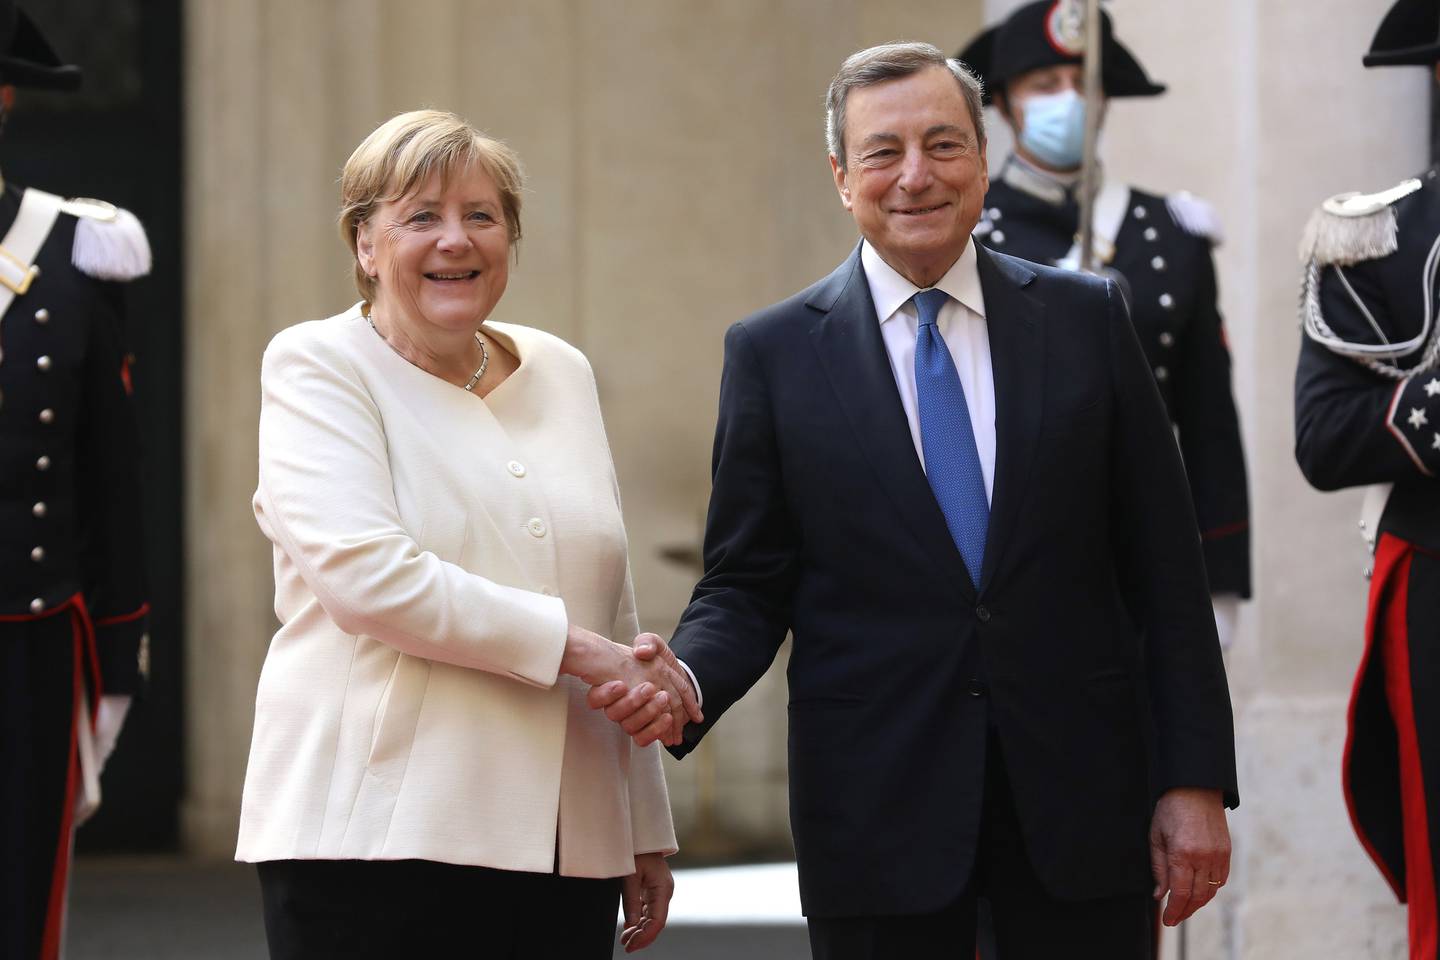 Mario Draghi, primer ministro de Italia, a la derecha, con Angela Merkel, canciller de Alemania, se dan la mano antes de su reunión en el Palacio Chigi en Roma, Italia, el jueves 7 de octubre de 2021 Fotógrafa: Alessia Pierdomenico/Bloombergdfd